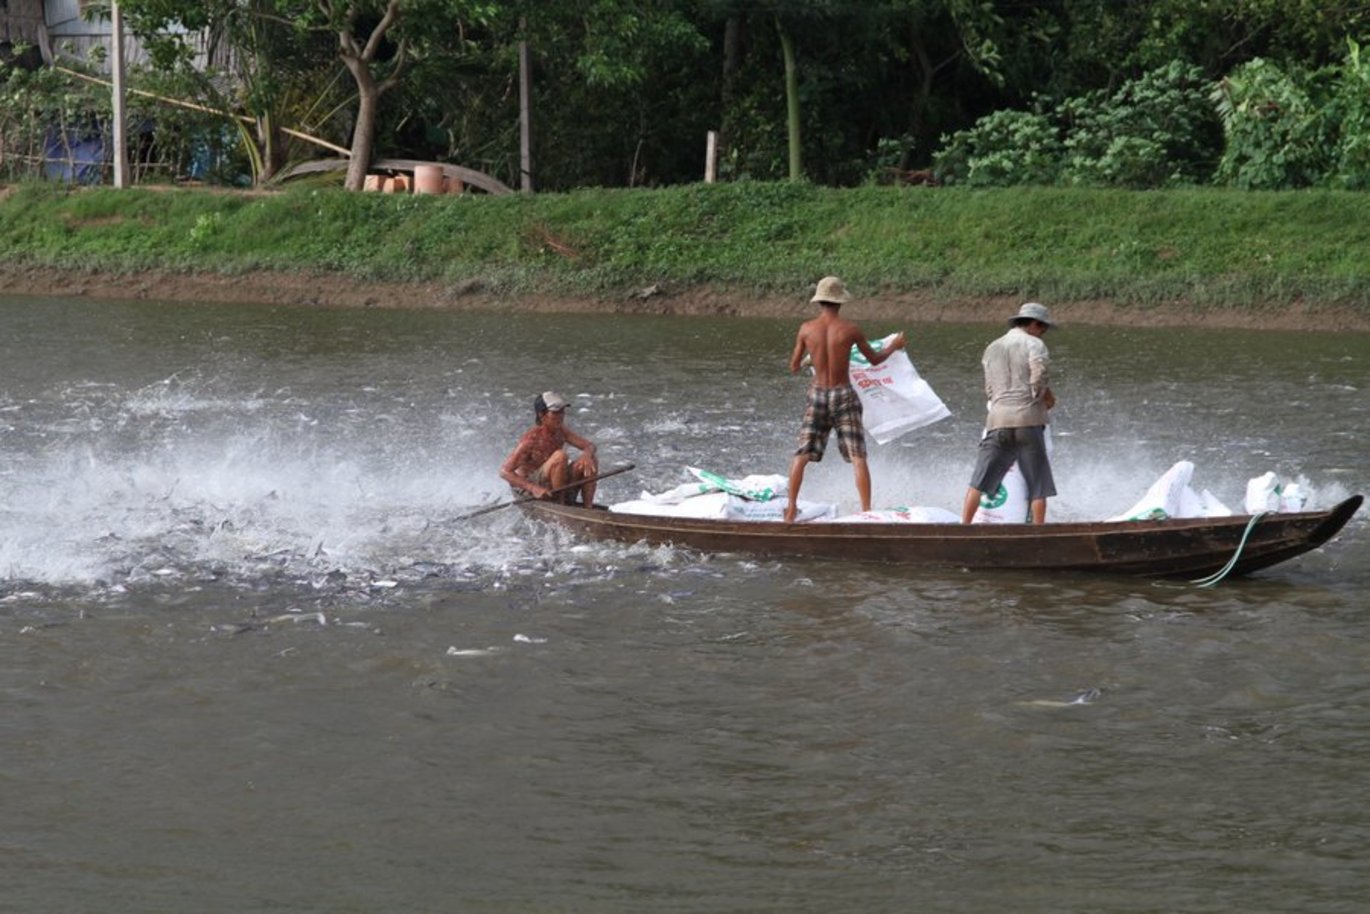 [Translate to English:] Spisetid for fiskene i Mekong-deltaet i Vietnam. De luftåndende fisks små munde bryder ikke kun vandoverfladen, når der er mad. Fiskene er nemlig nødt til at trække vejret ved overfladen, for de lever i meget iltfattigt vand. Zoofysiologer bag et sto